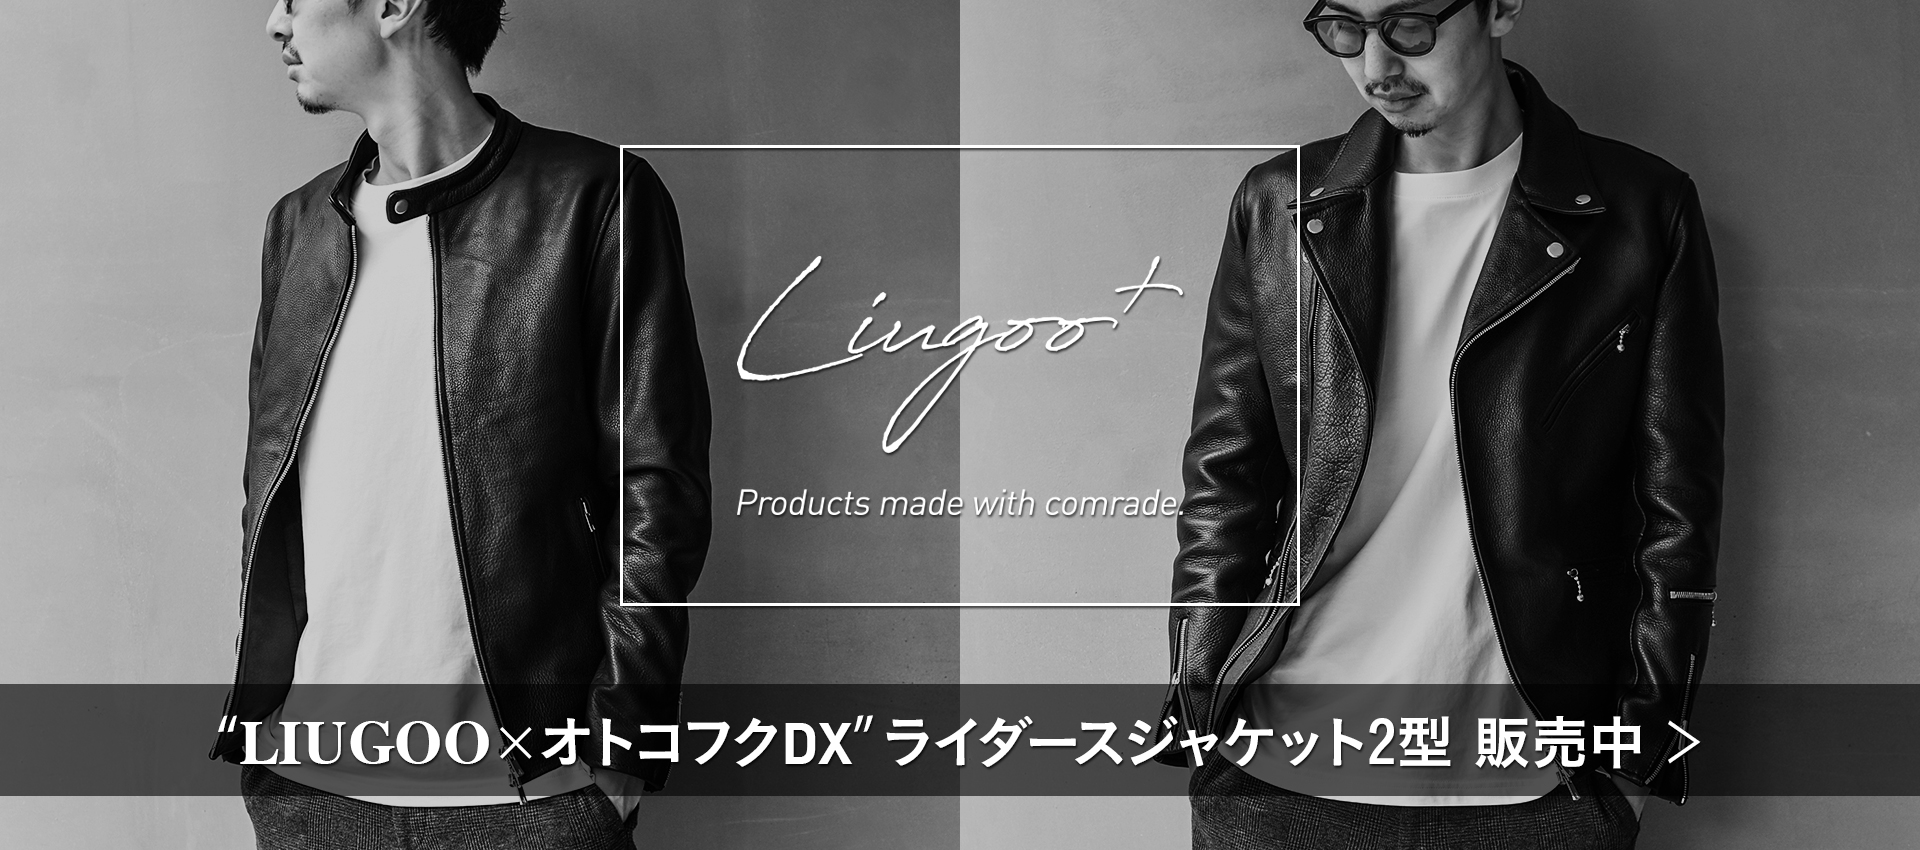 Liugoo+のライダースジャケット2型発売中